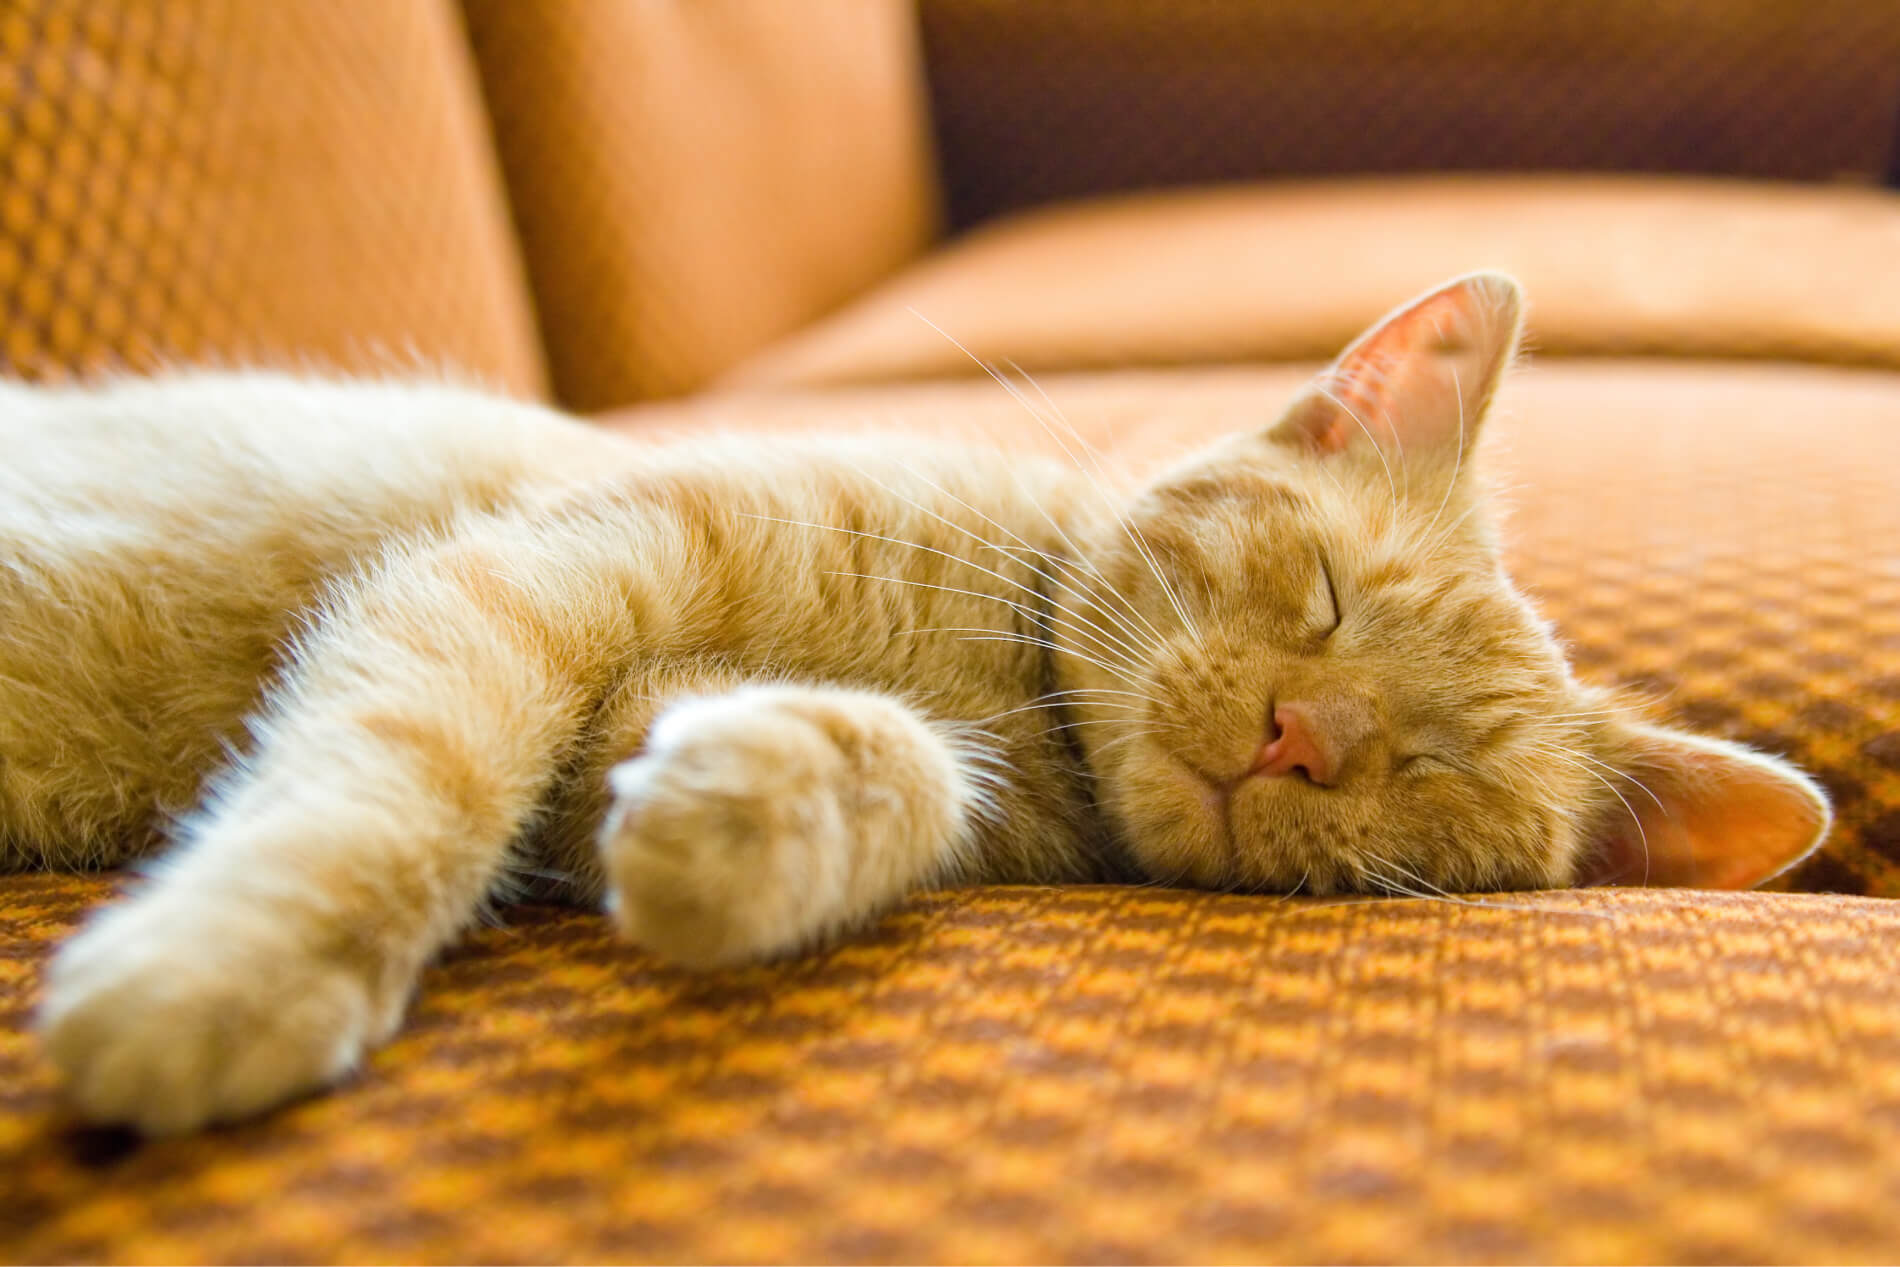 Le chat dort beaucoup : à quoi cela est-il dû ?